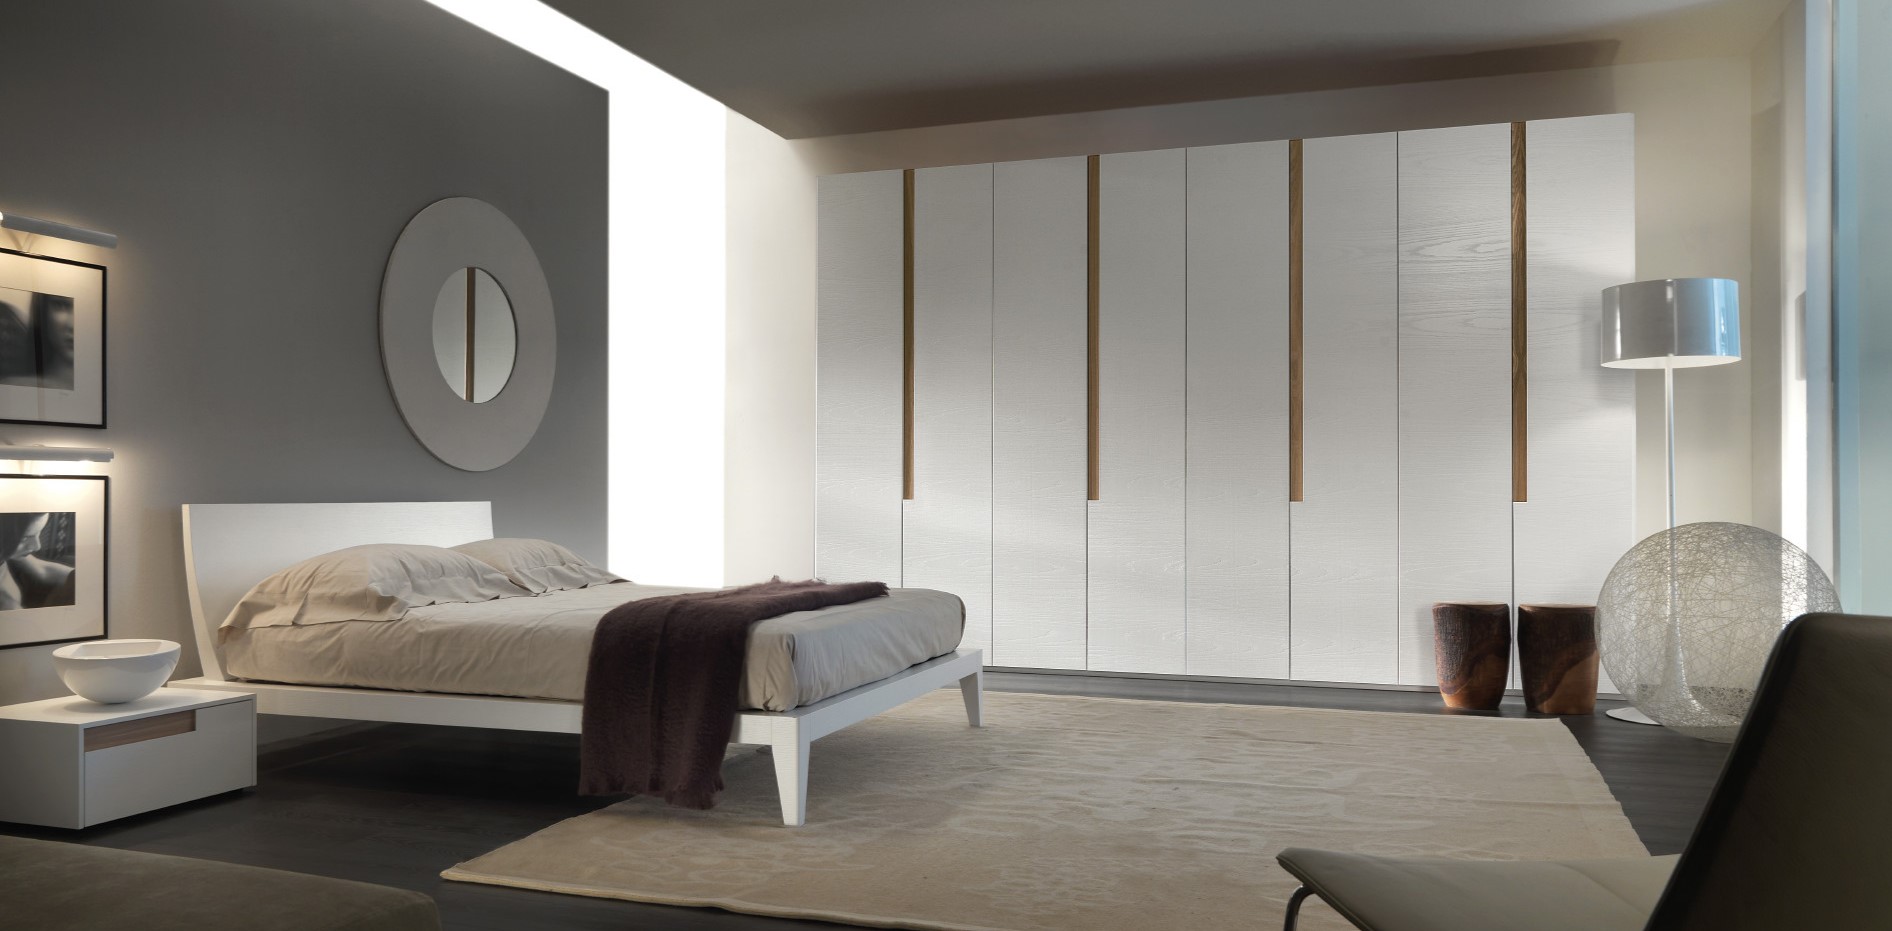 Белый шкаф с легкой фактурой дерева идеально подойдет для современного интерьера